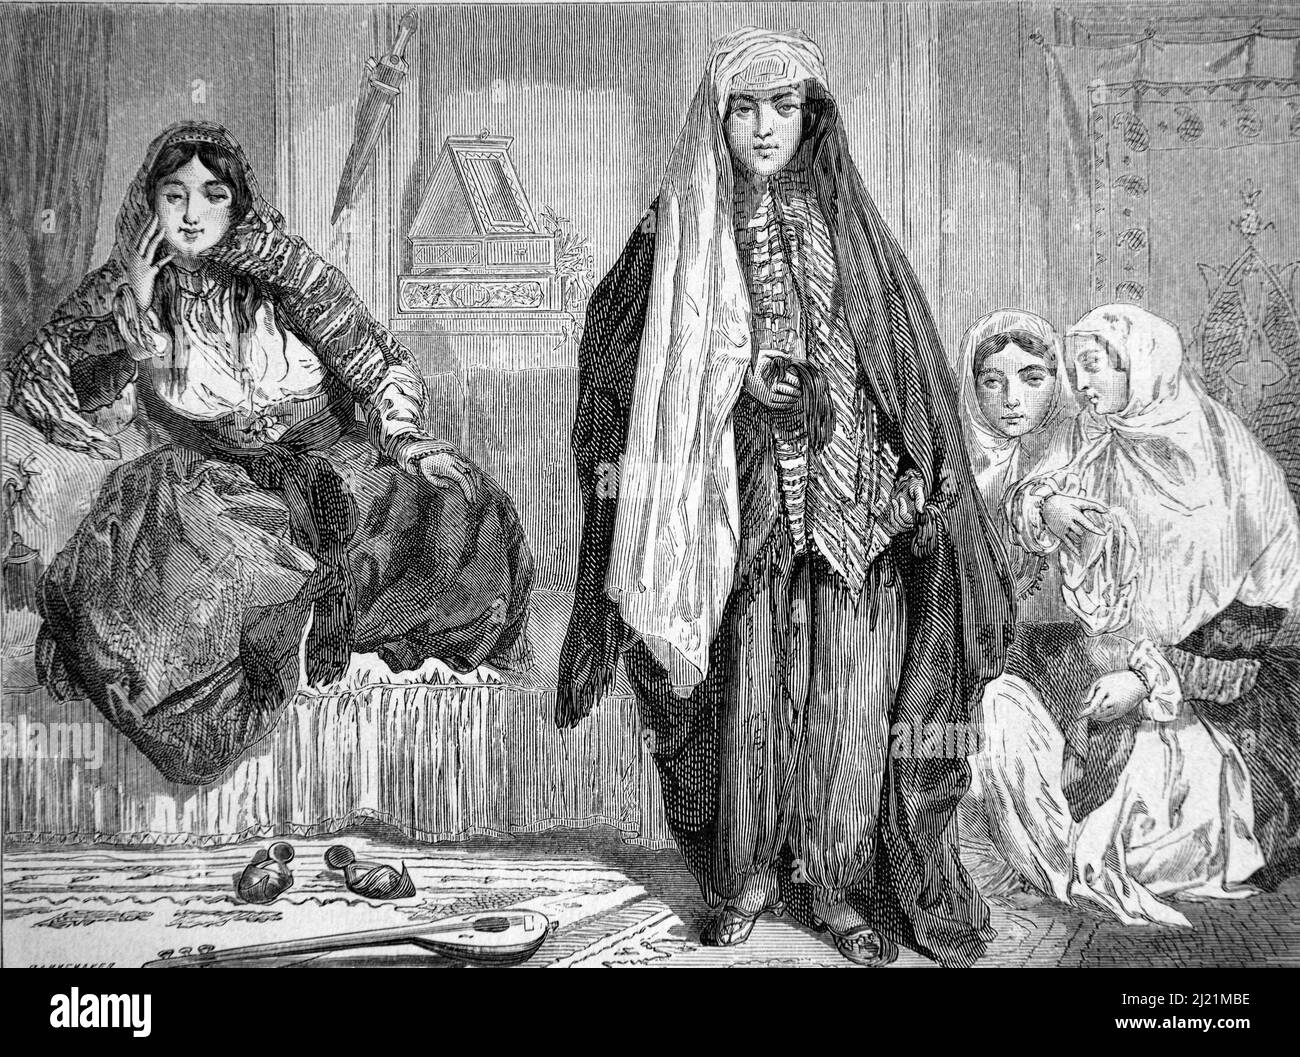 Persische Frauen oder iranische Frauen tragen traditionelle iranische Kleidung oder ethnische Kostüme in der Tradition Persisches oder iranisches Haus Innere Iran. Vintage Illustration oder Gravur 1860. Stockfoto